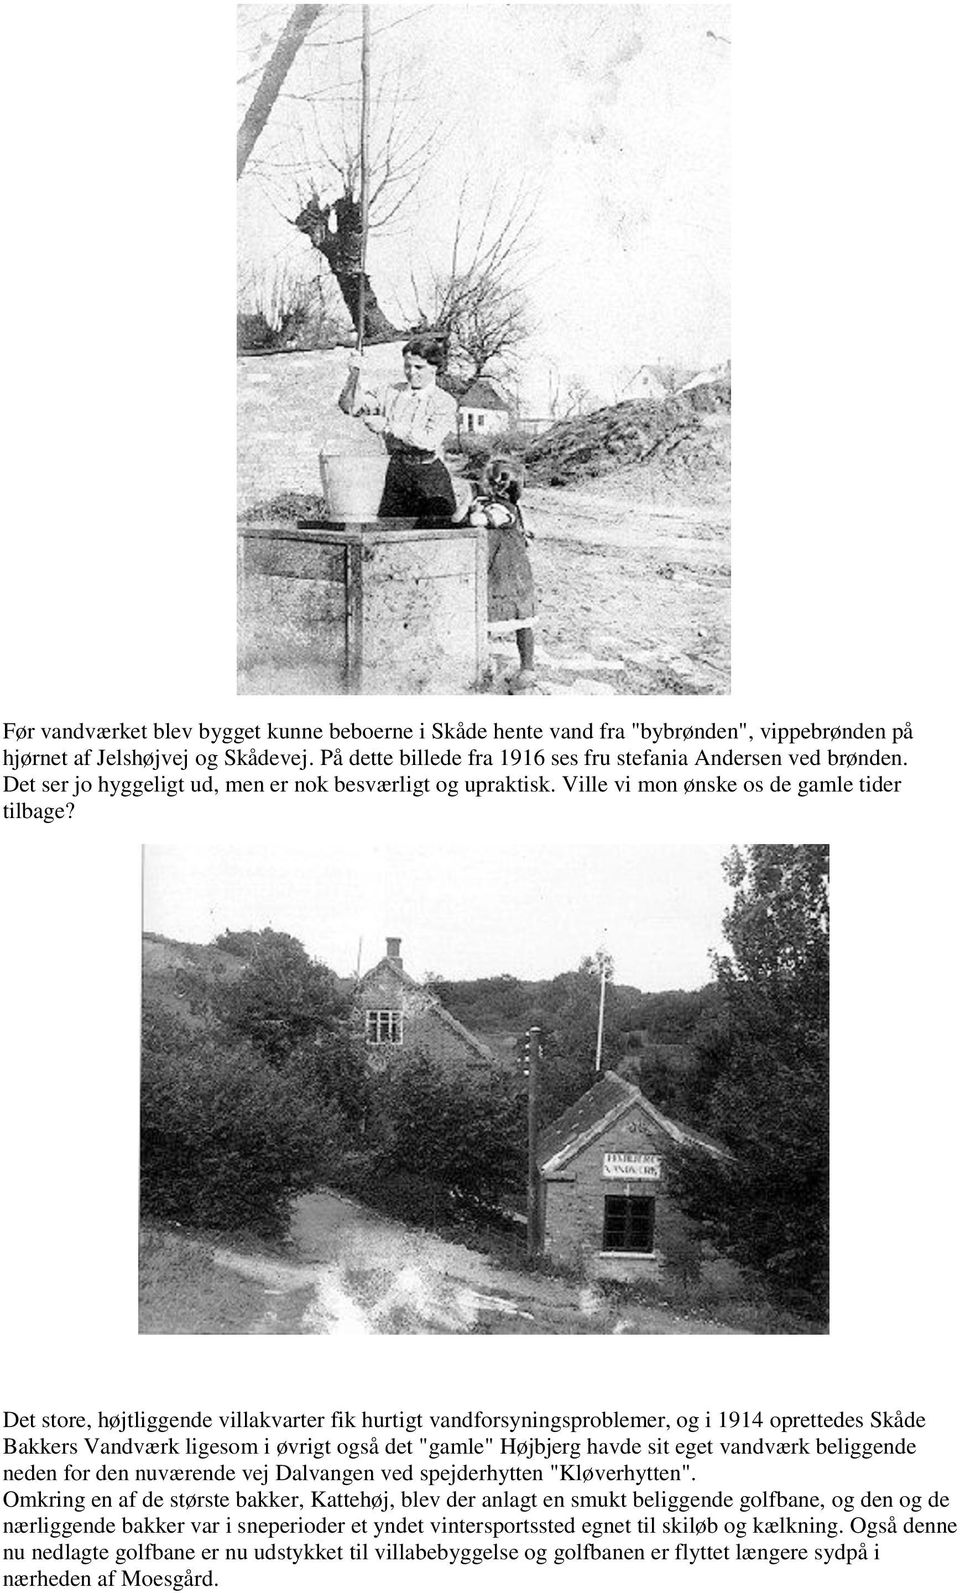 Det store, højtliggende villakvarter fik hurtigt vandforsyningsproblemer, og i 1914 oprettedes Skåde Bakkers Vandværk ligesom i øvrigt også det "gamle" Højbjerg havde sit eget vandværk beliggende